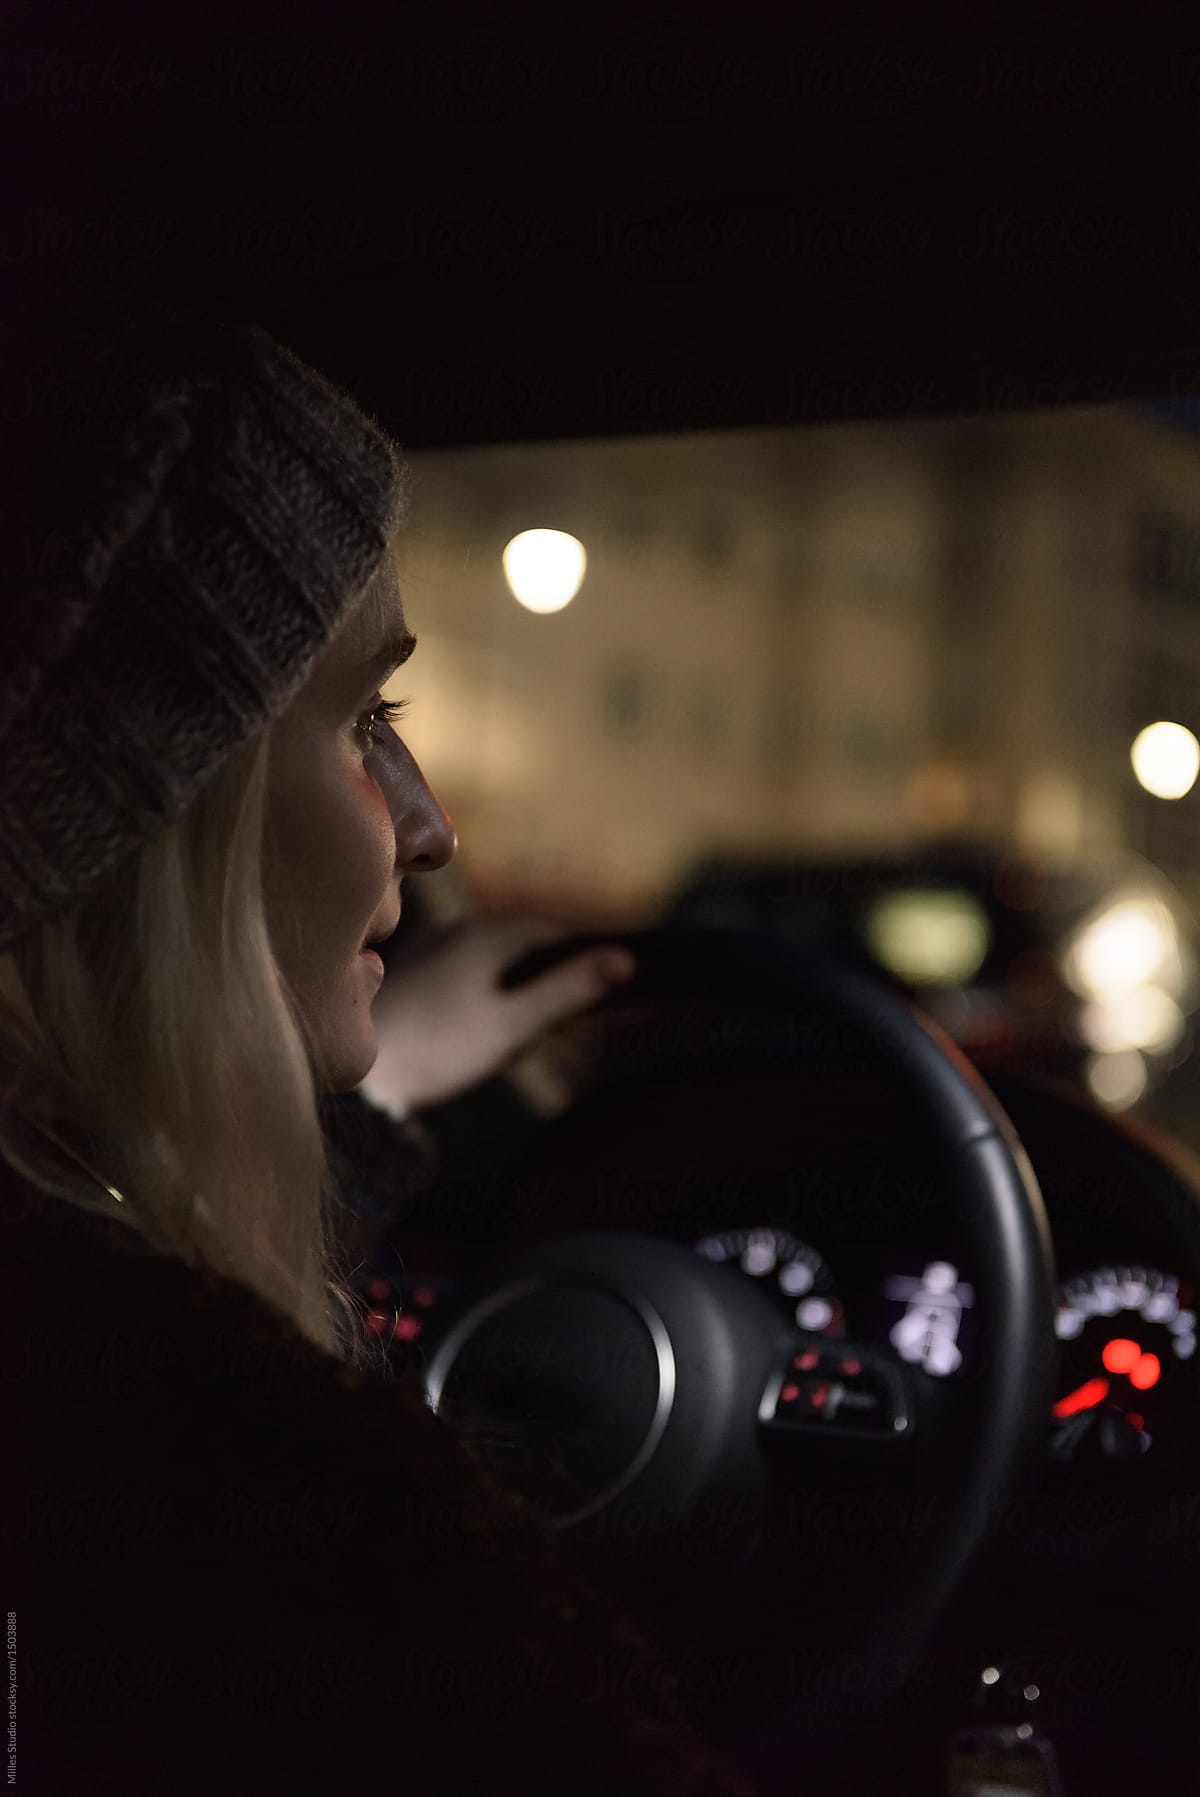 Woman riding car at night